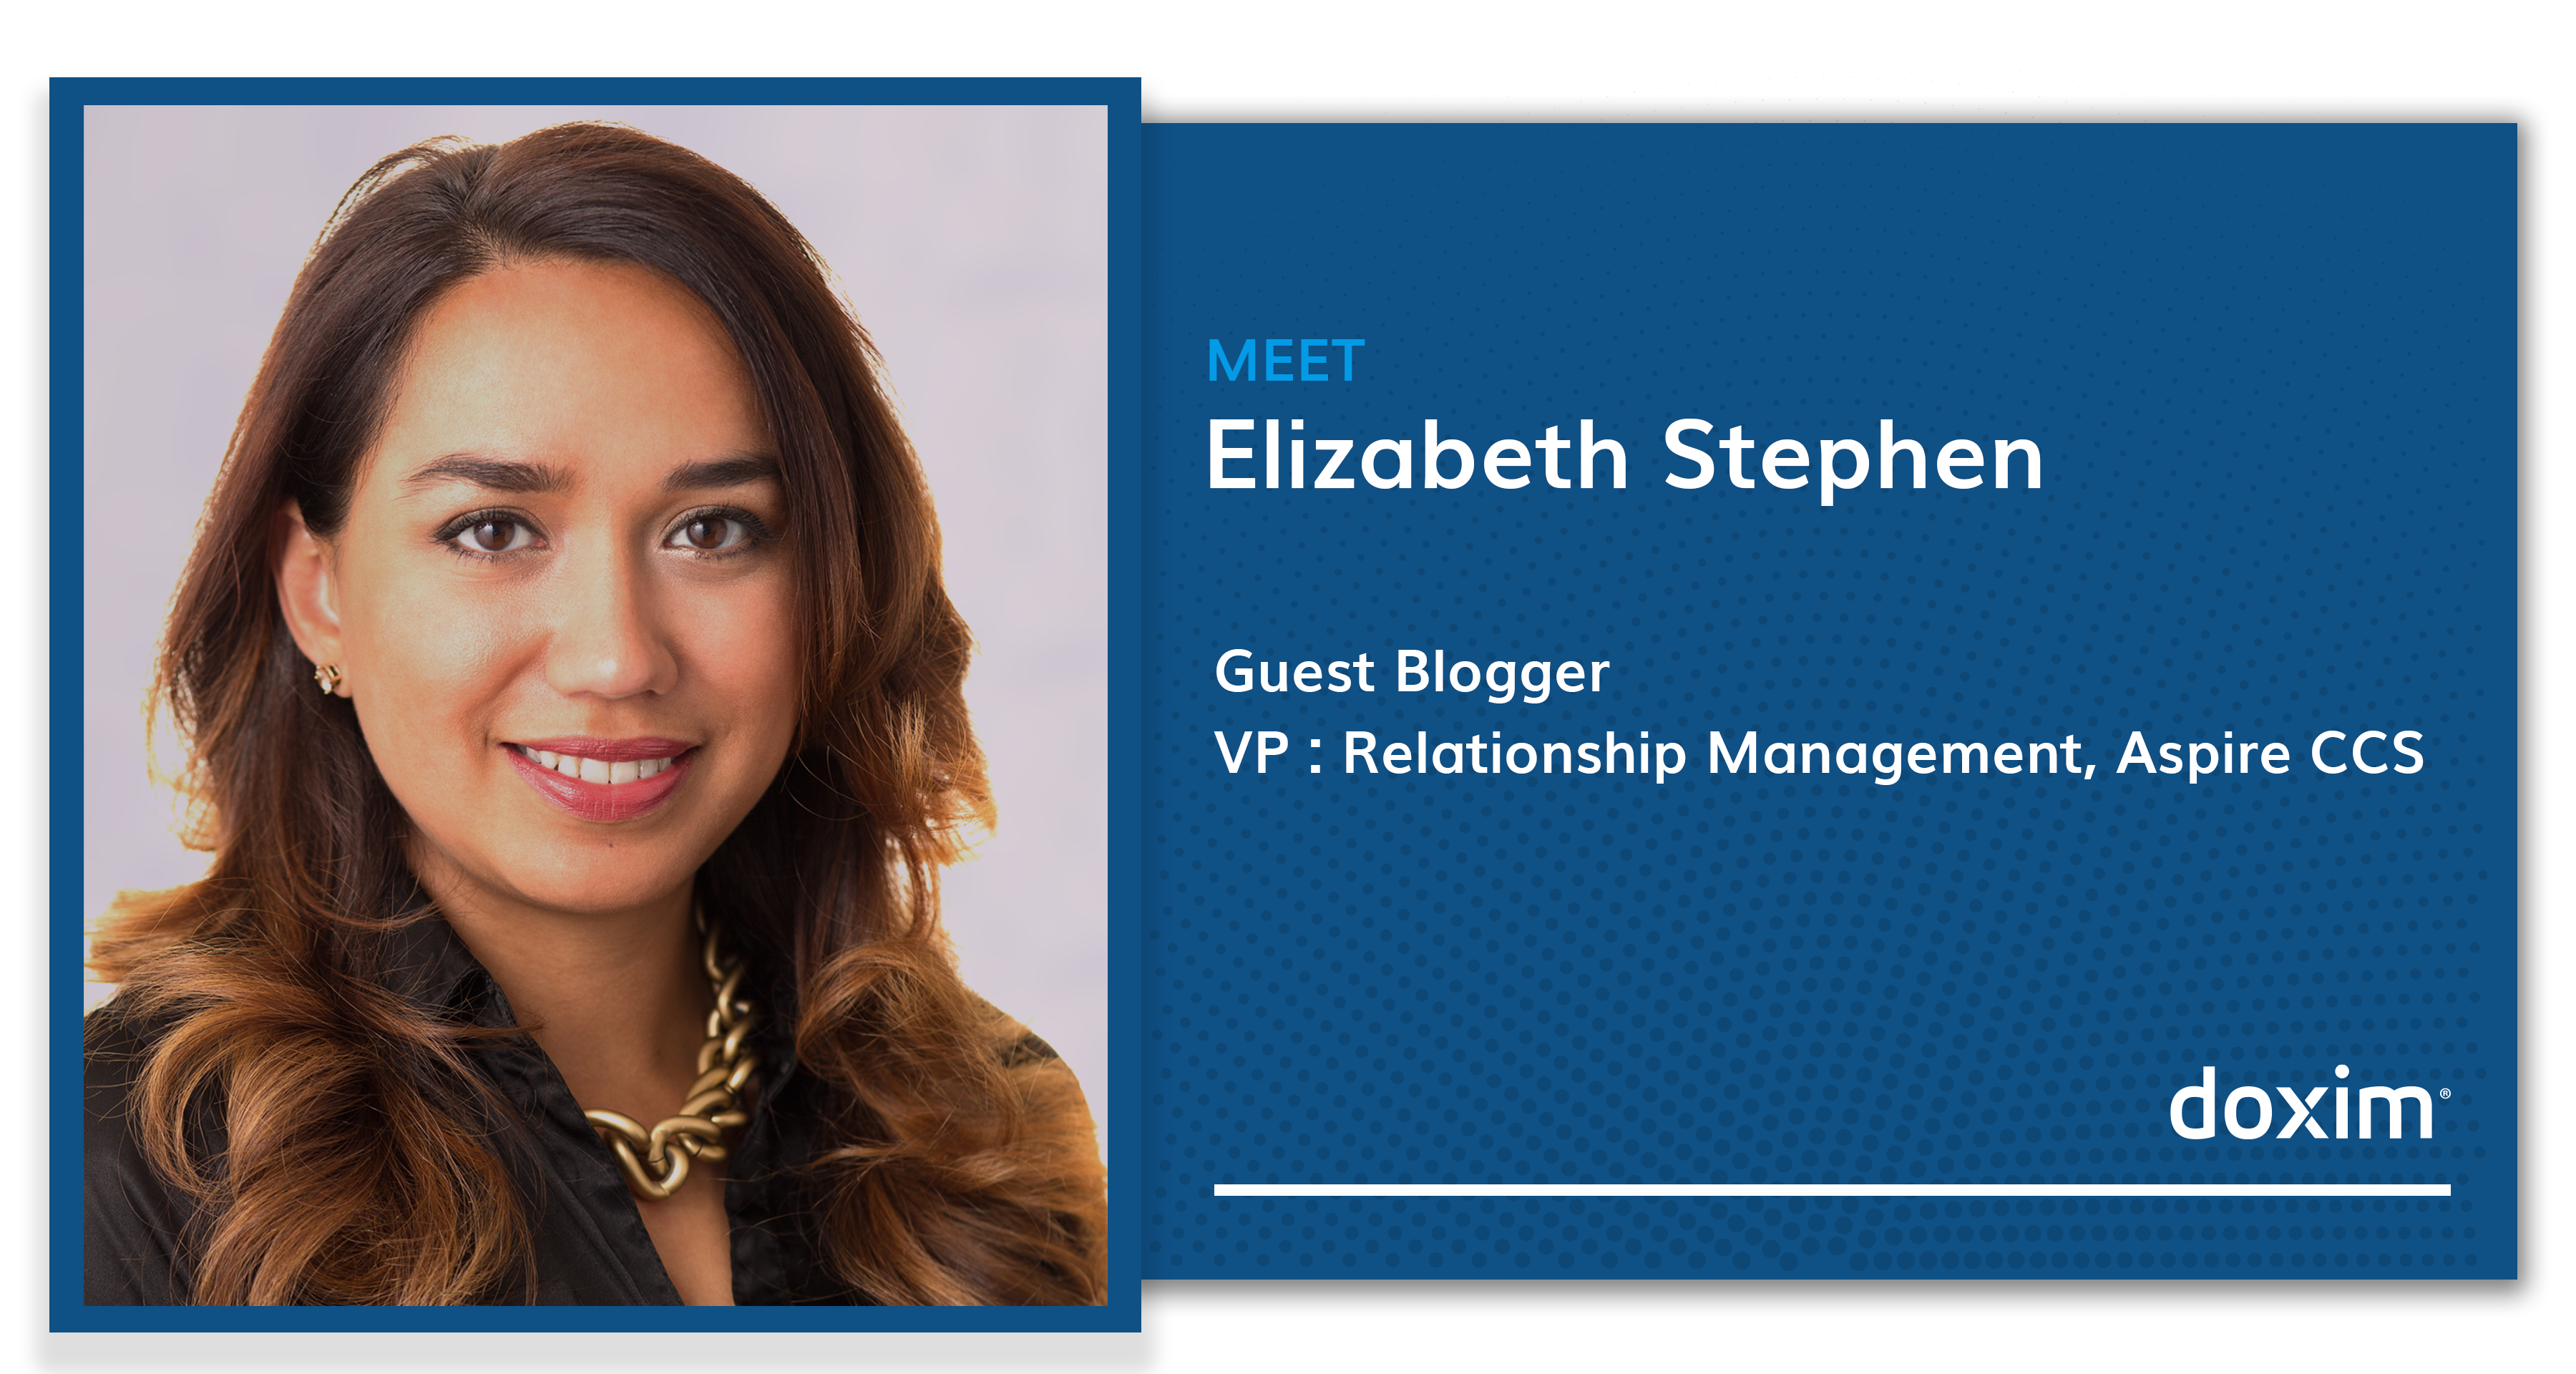 Meet Elizabeth Stephen